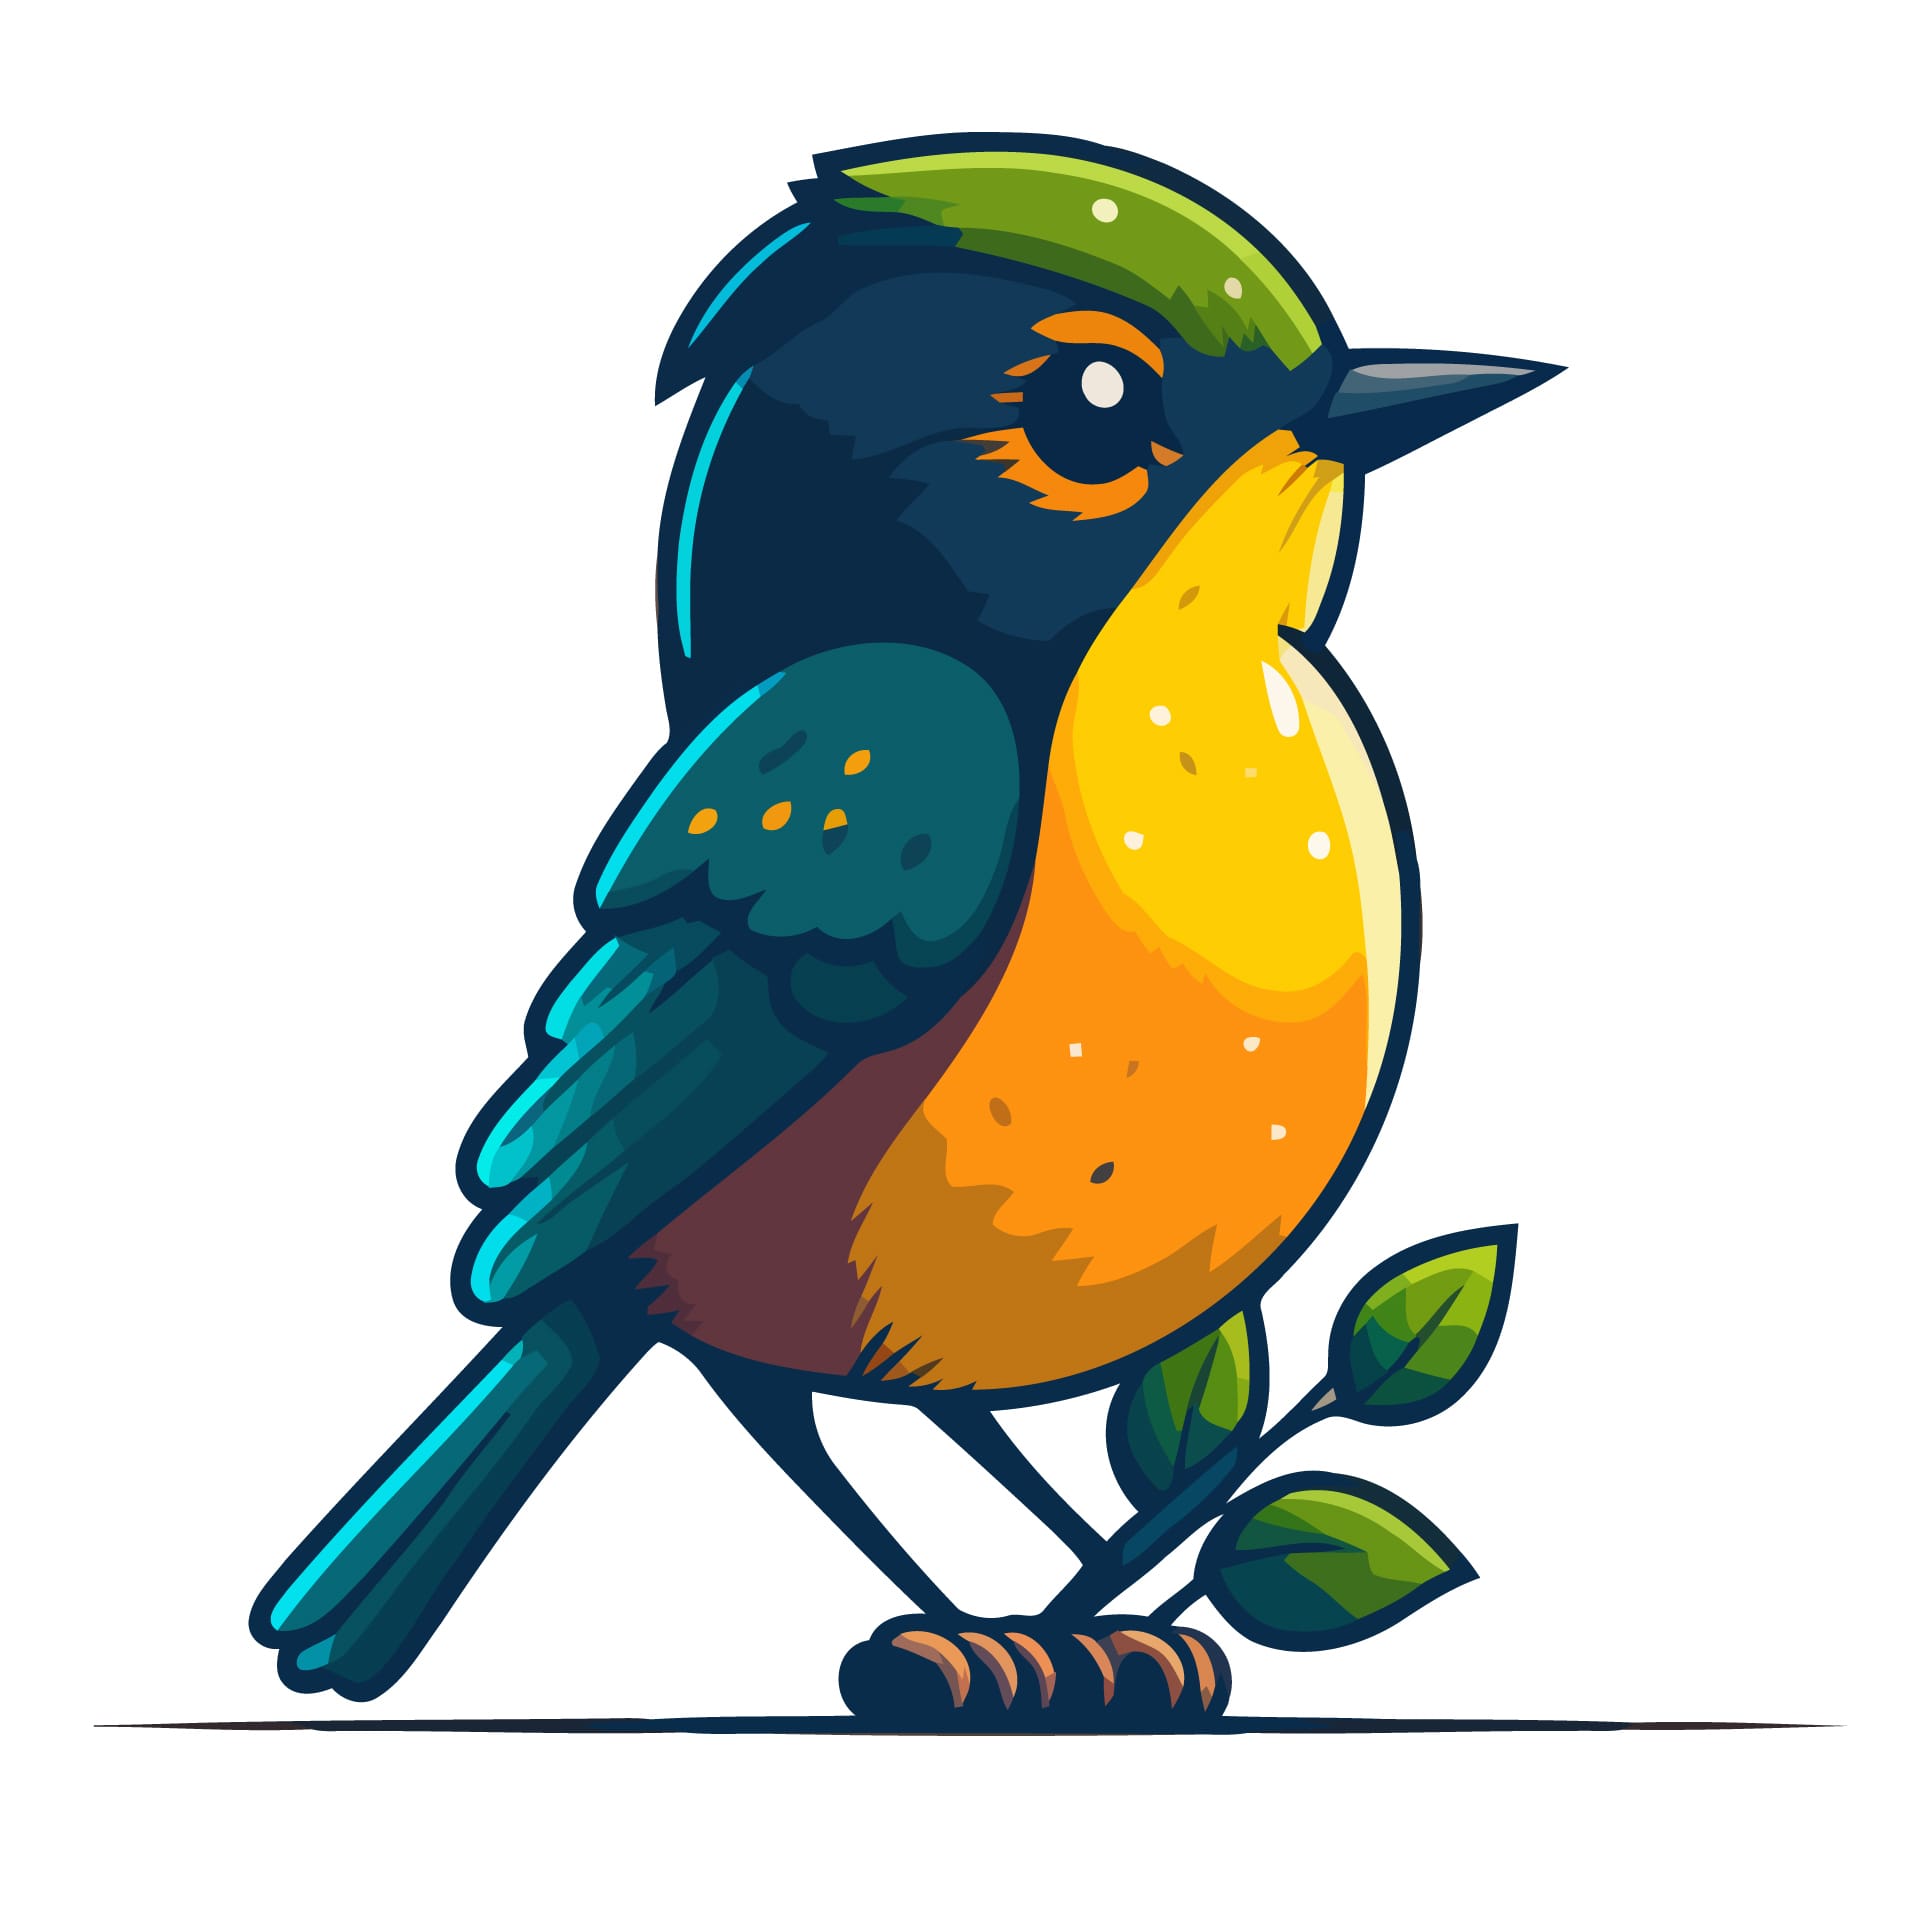 Cute little bird cartoon animal illustration mascot icon picture